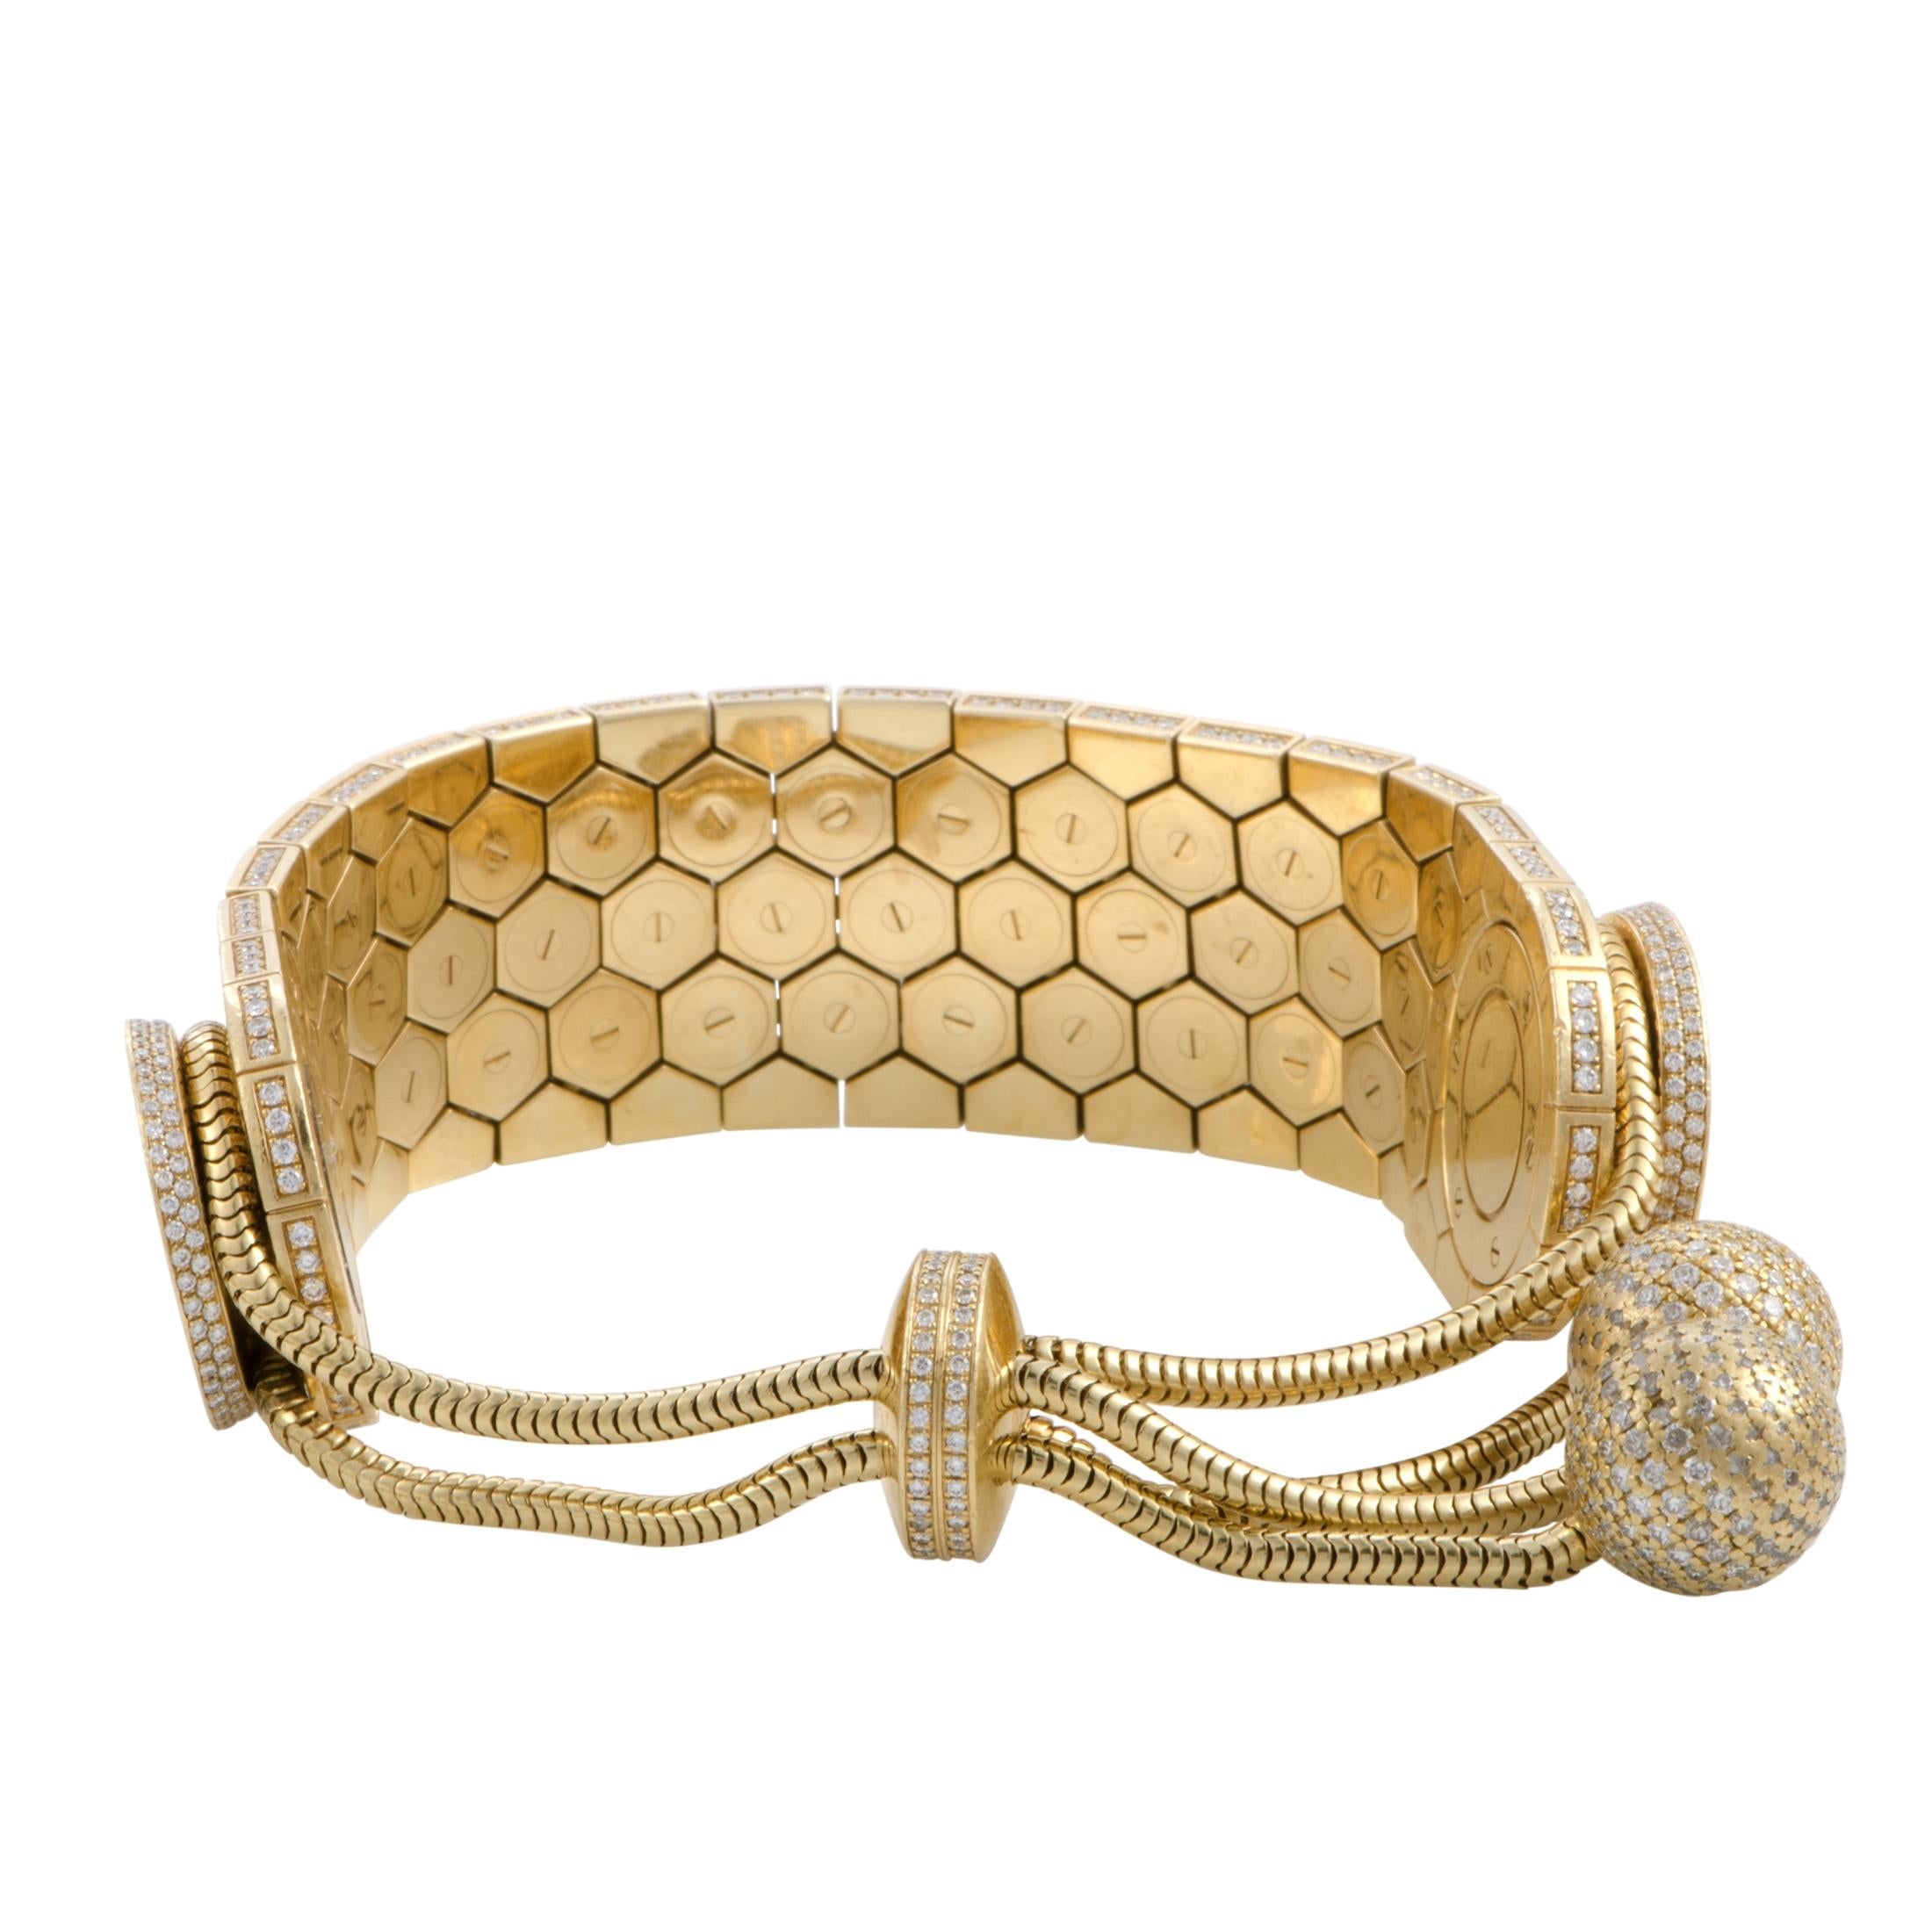 Women's Van Cleef & Arpels 18 Karat Yellow Gold and Diamond Bracelet Watch HH1660